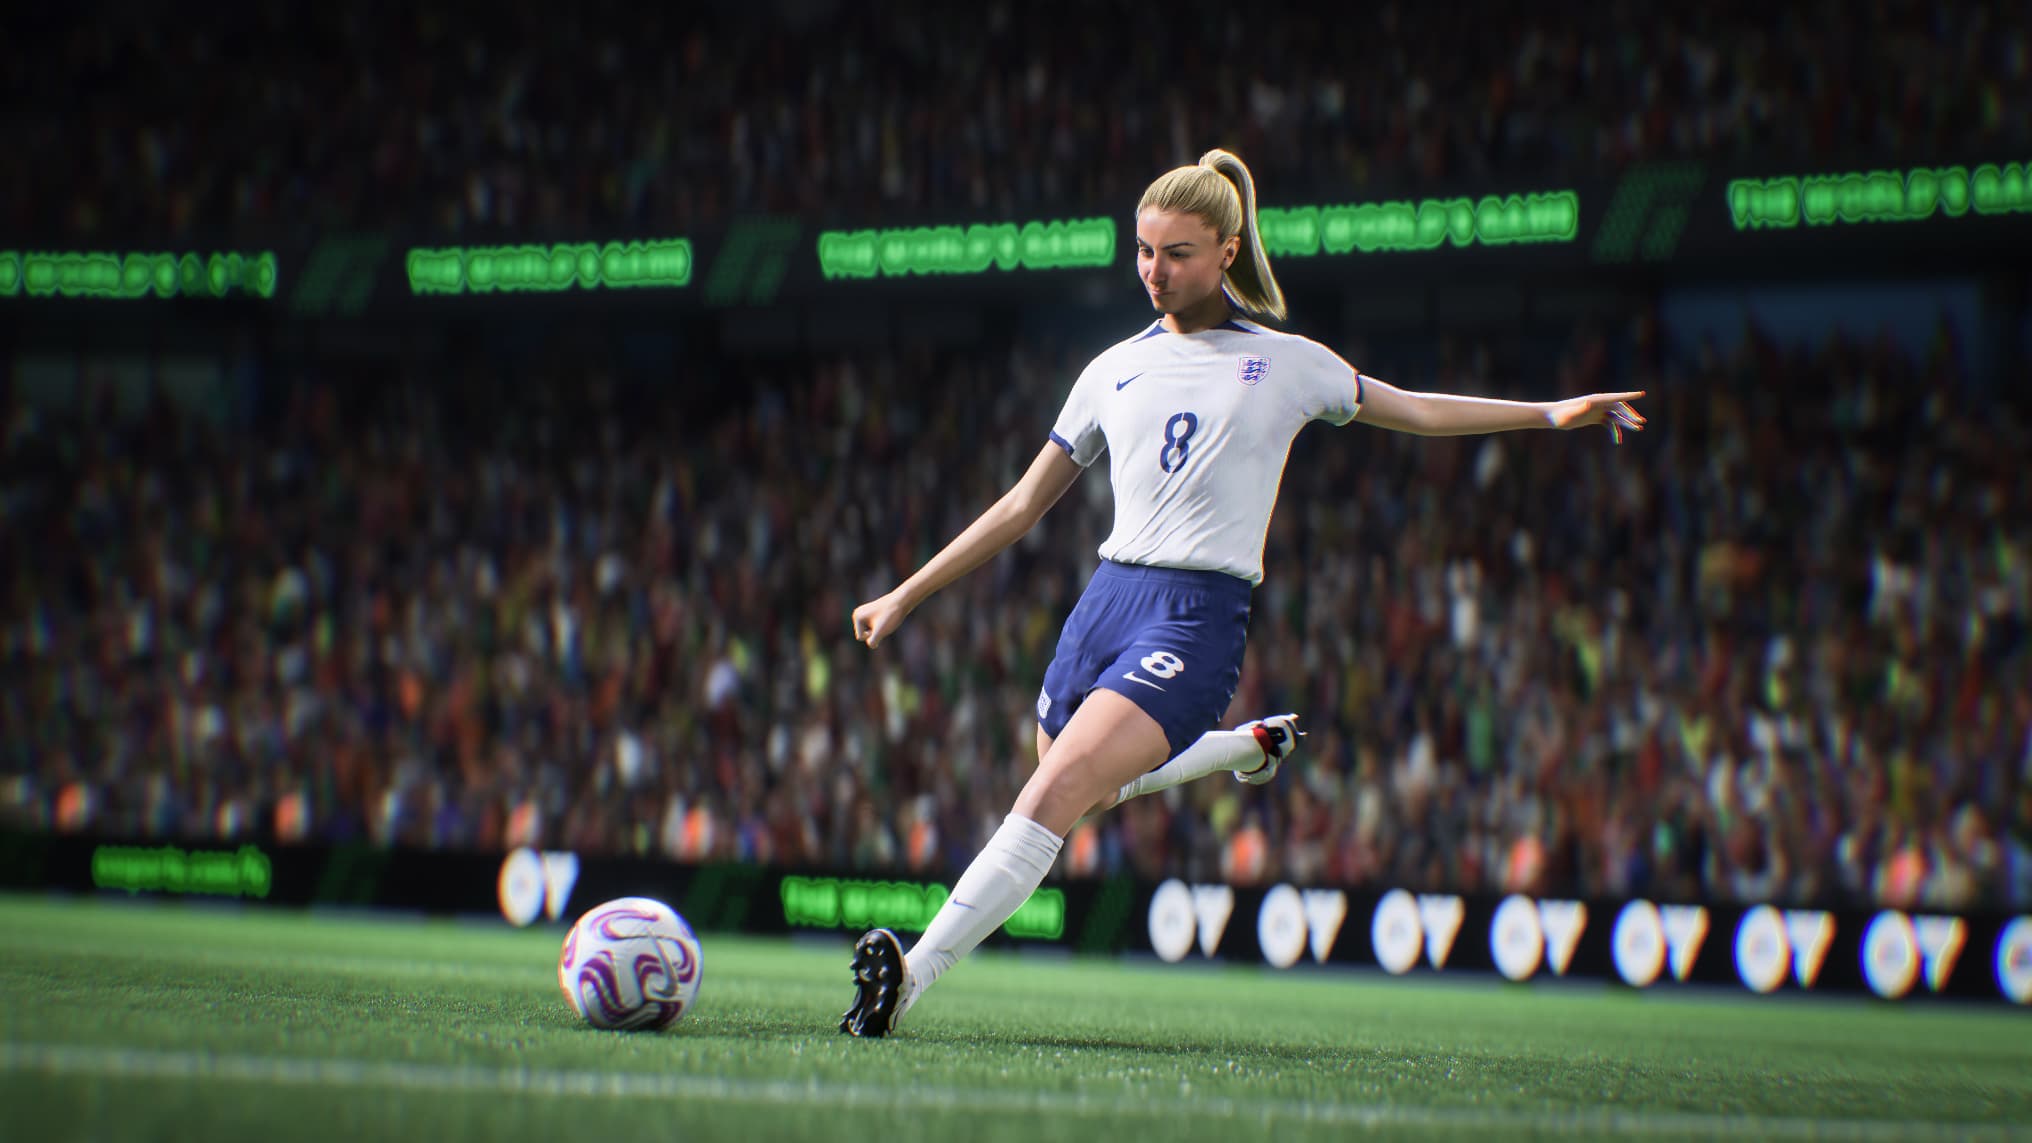 Misogynie et insultes sexistes, plusieurs joueuses de football sont  harcelées depuis la sortie du jeu EA FC 24, le successeur de FIFA 